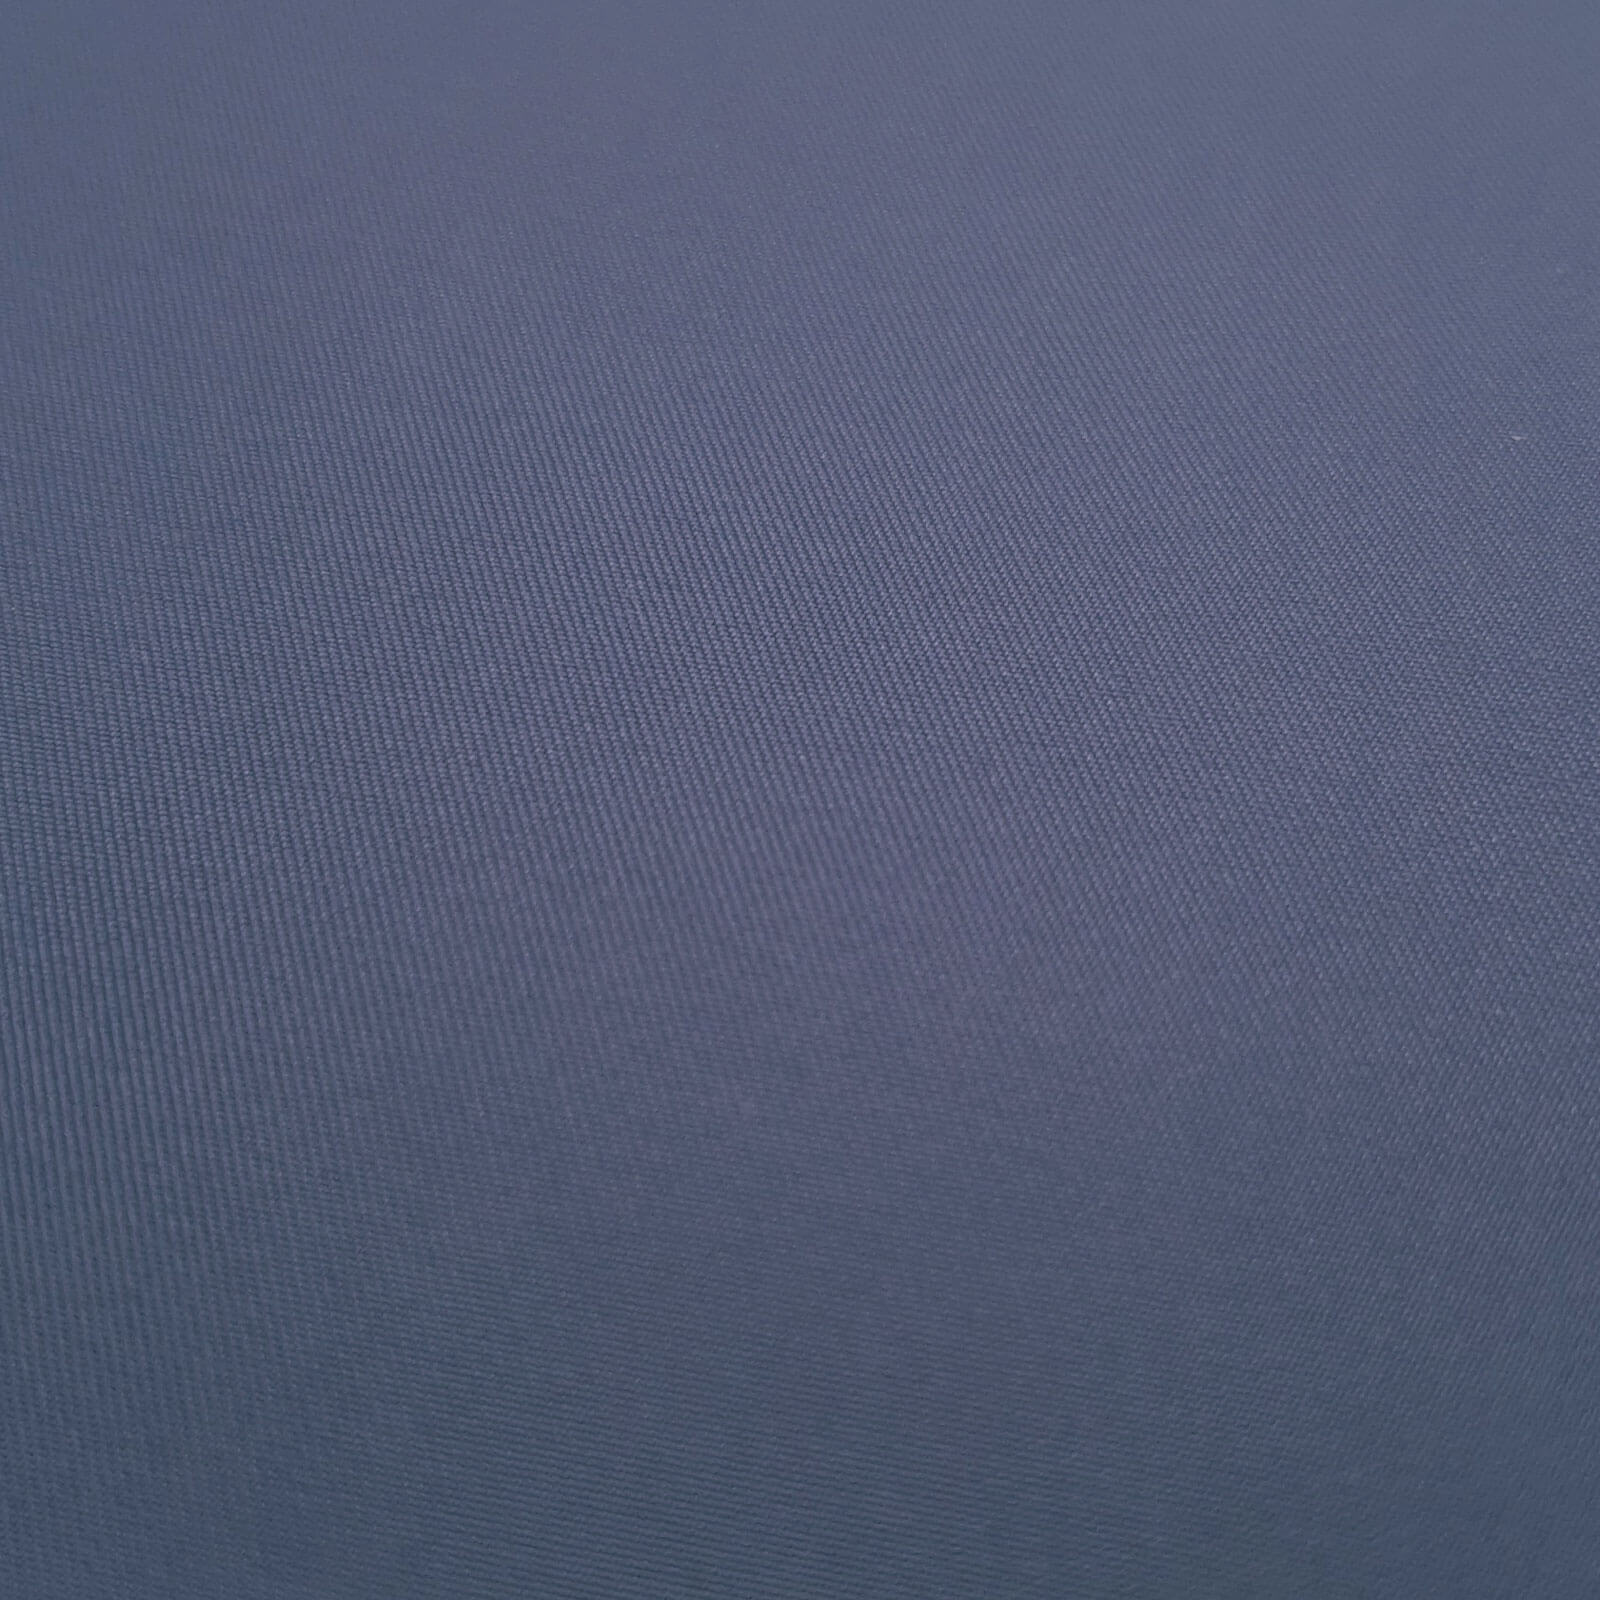 Laurena - Laminato esterno in tessuto con membrana climatica - Blu medio